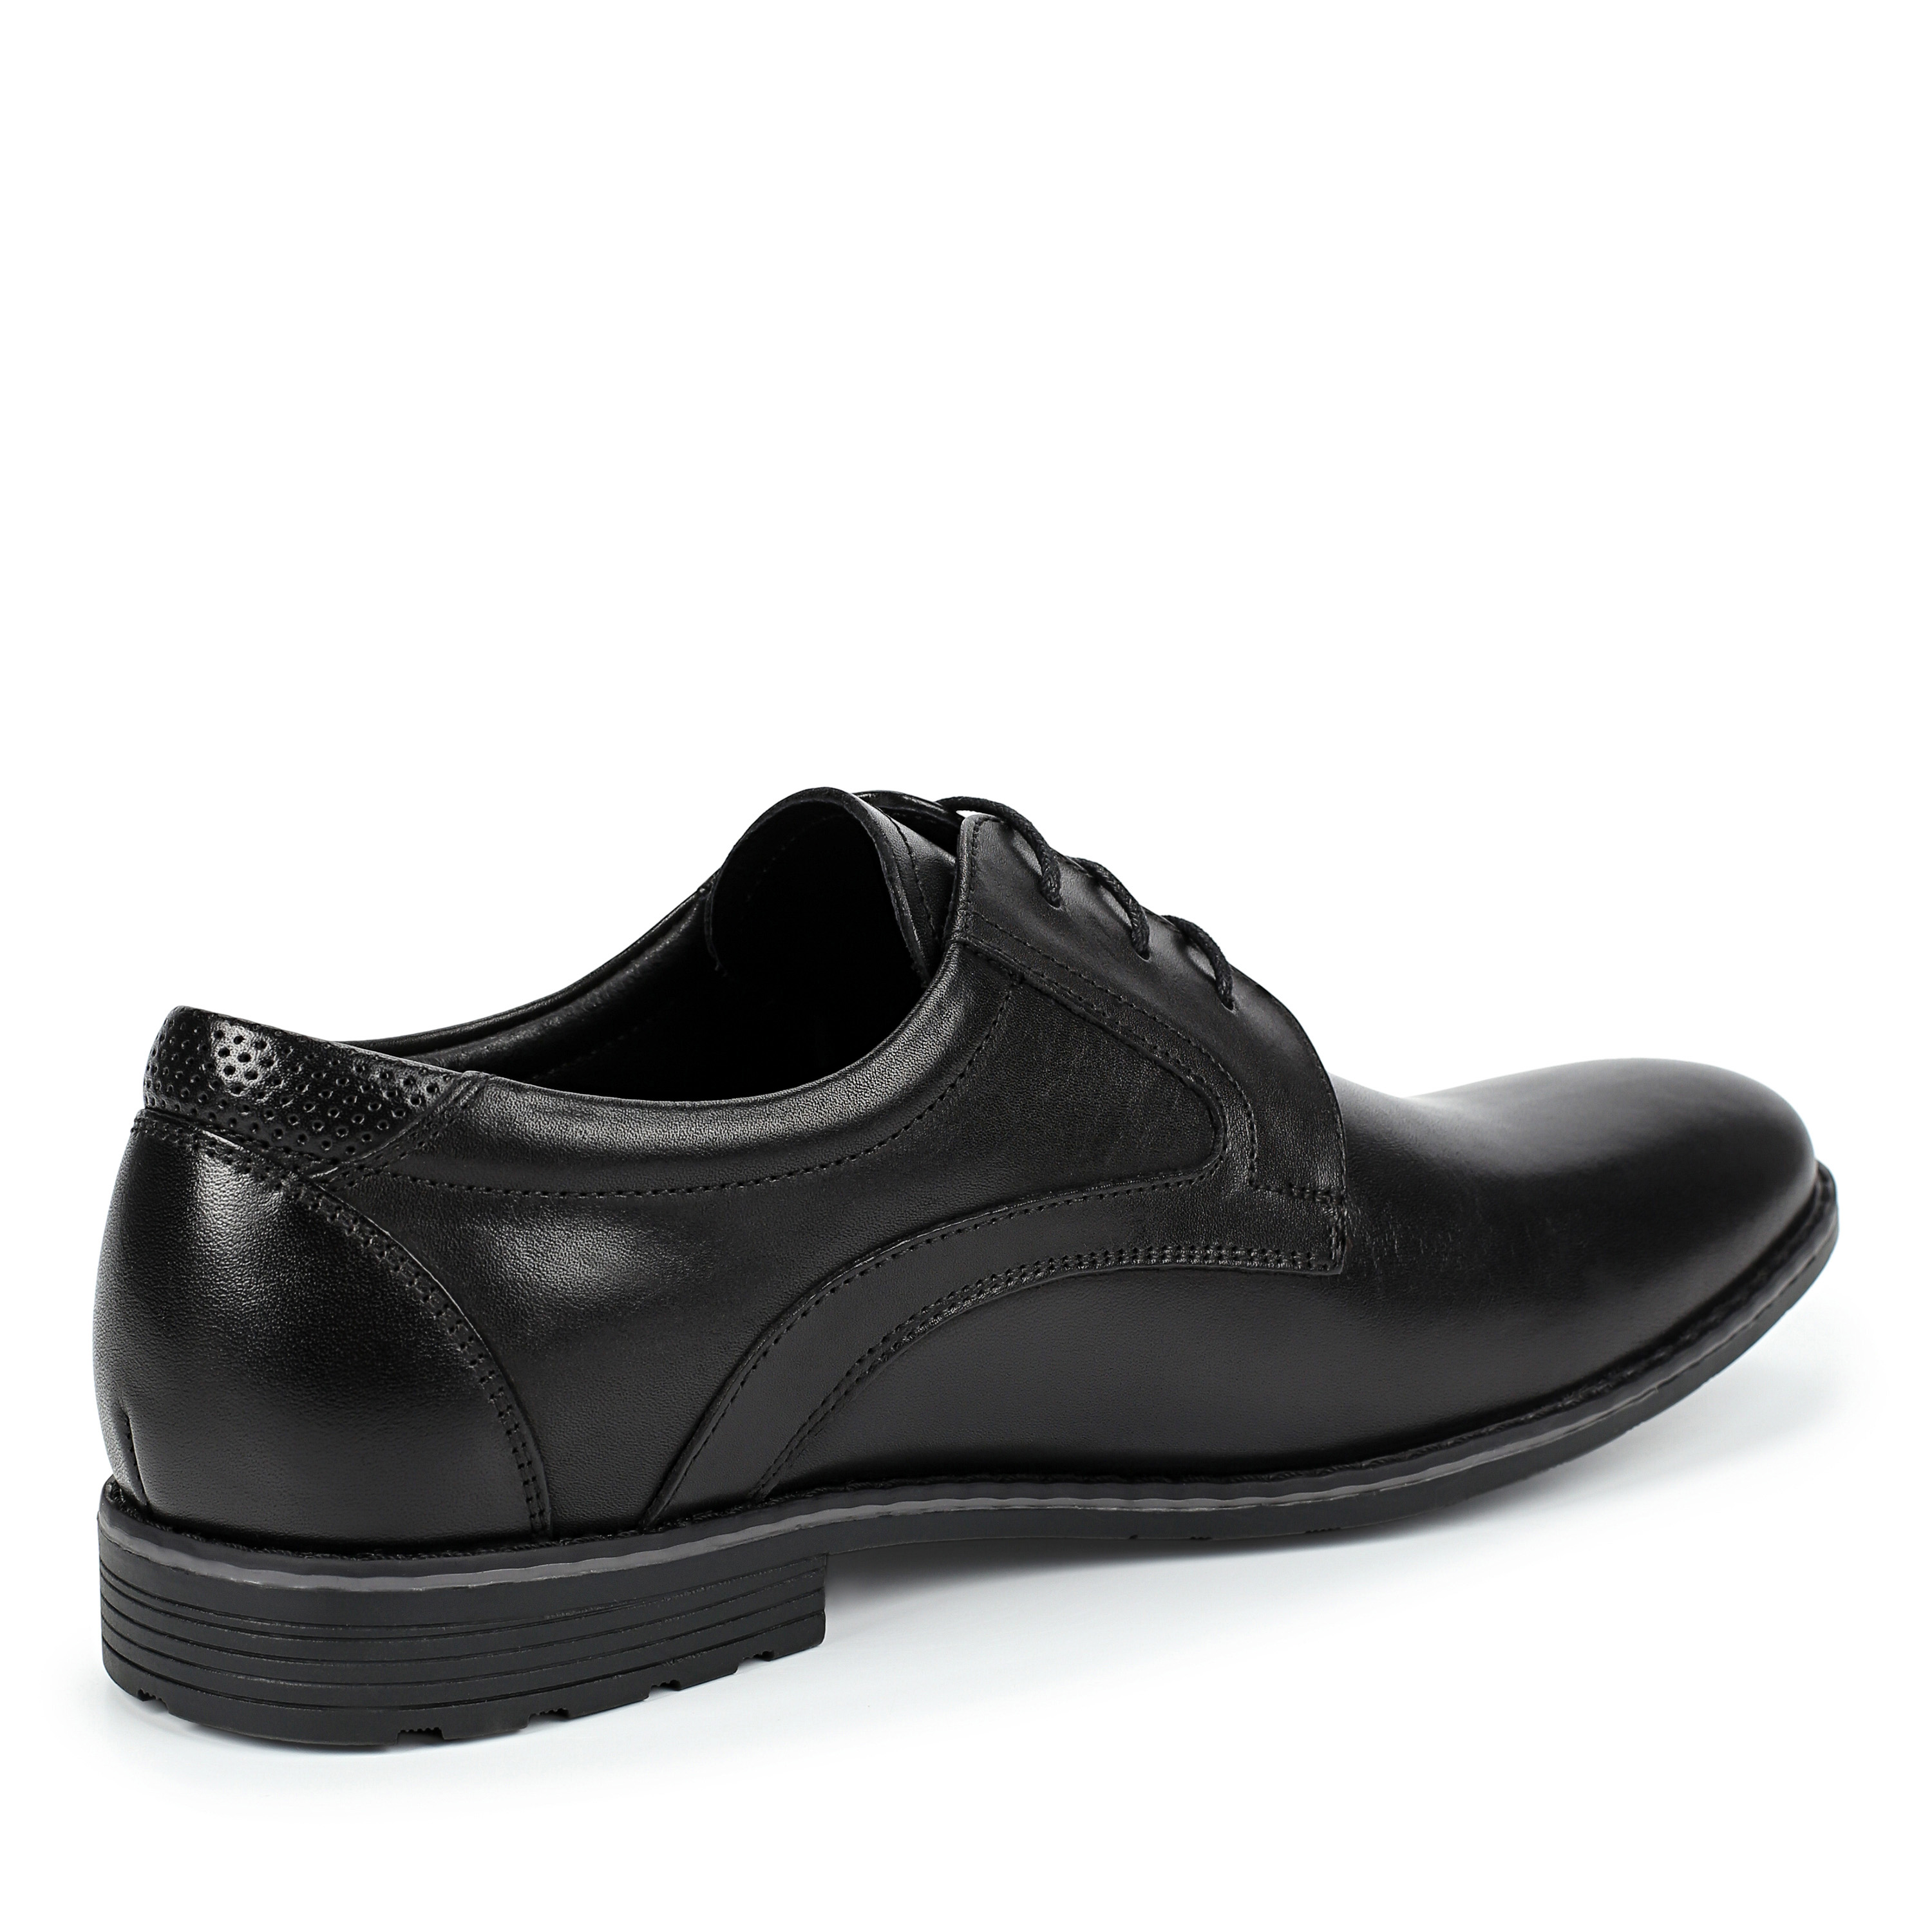 Туфли Thomas Munz 58-072A-1101, цвет черный, размер 41 - фото 3